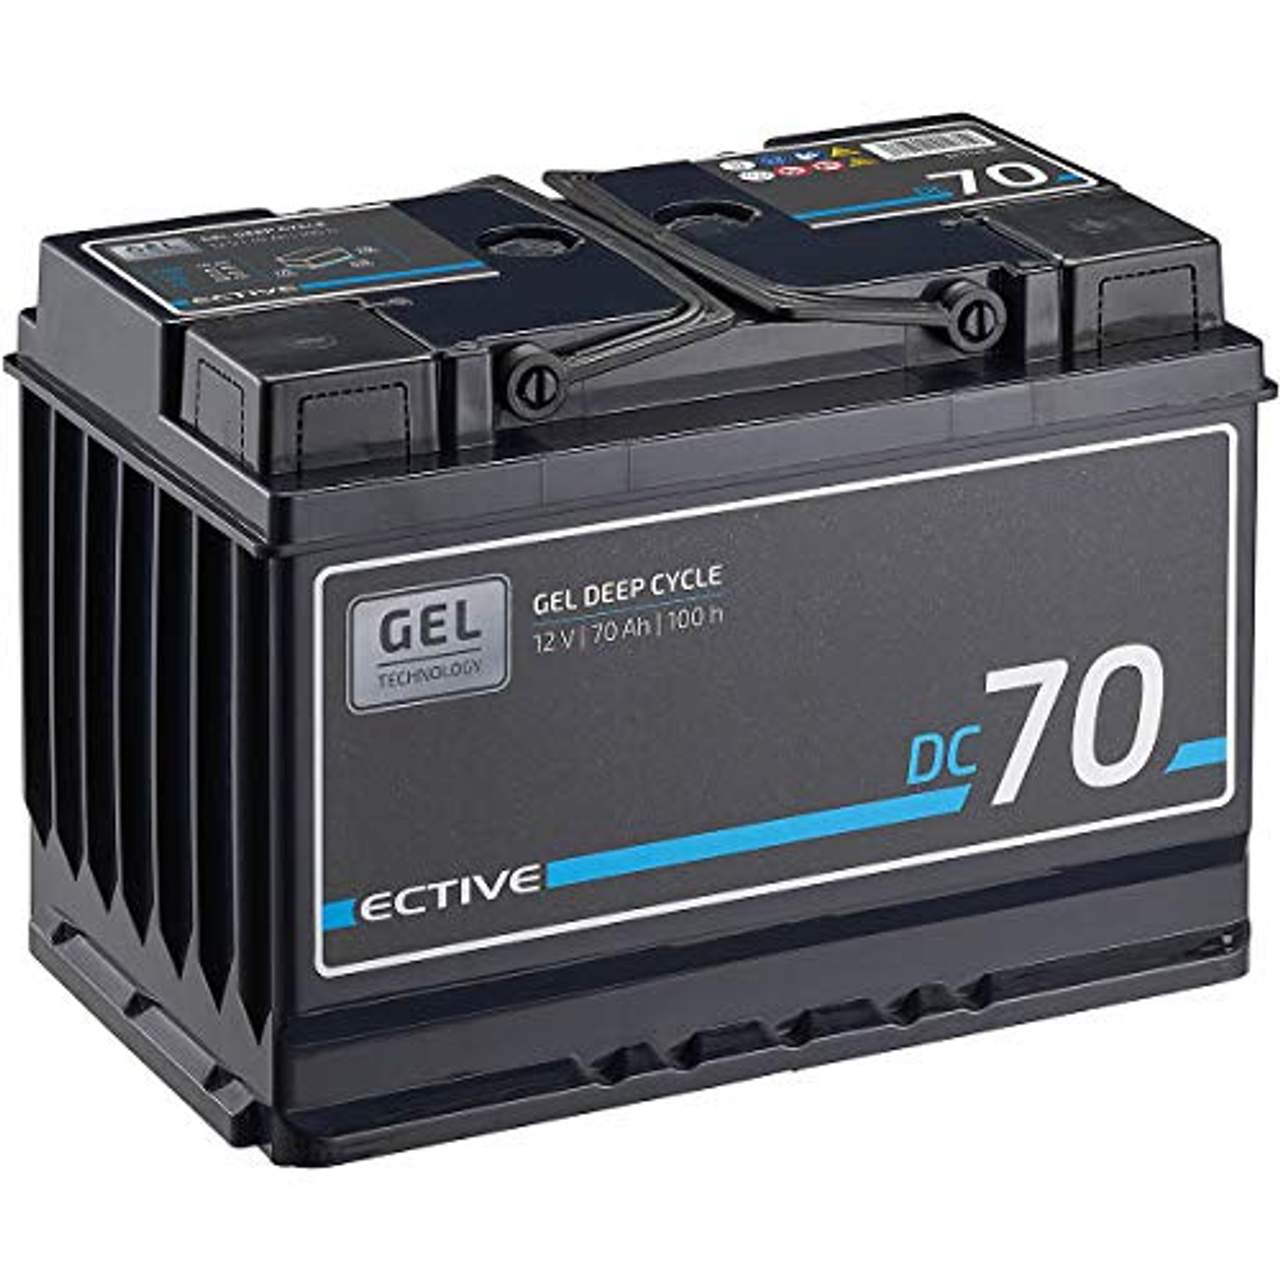 ECTIVE 70Ah 12V Gel Versorgungsbatterie DC 70 Gel Deep Cycle Solar-Batterie